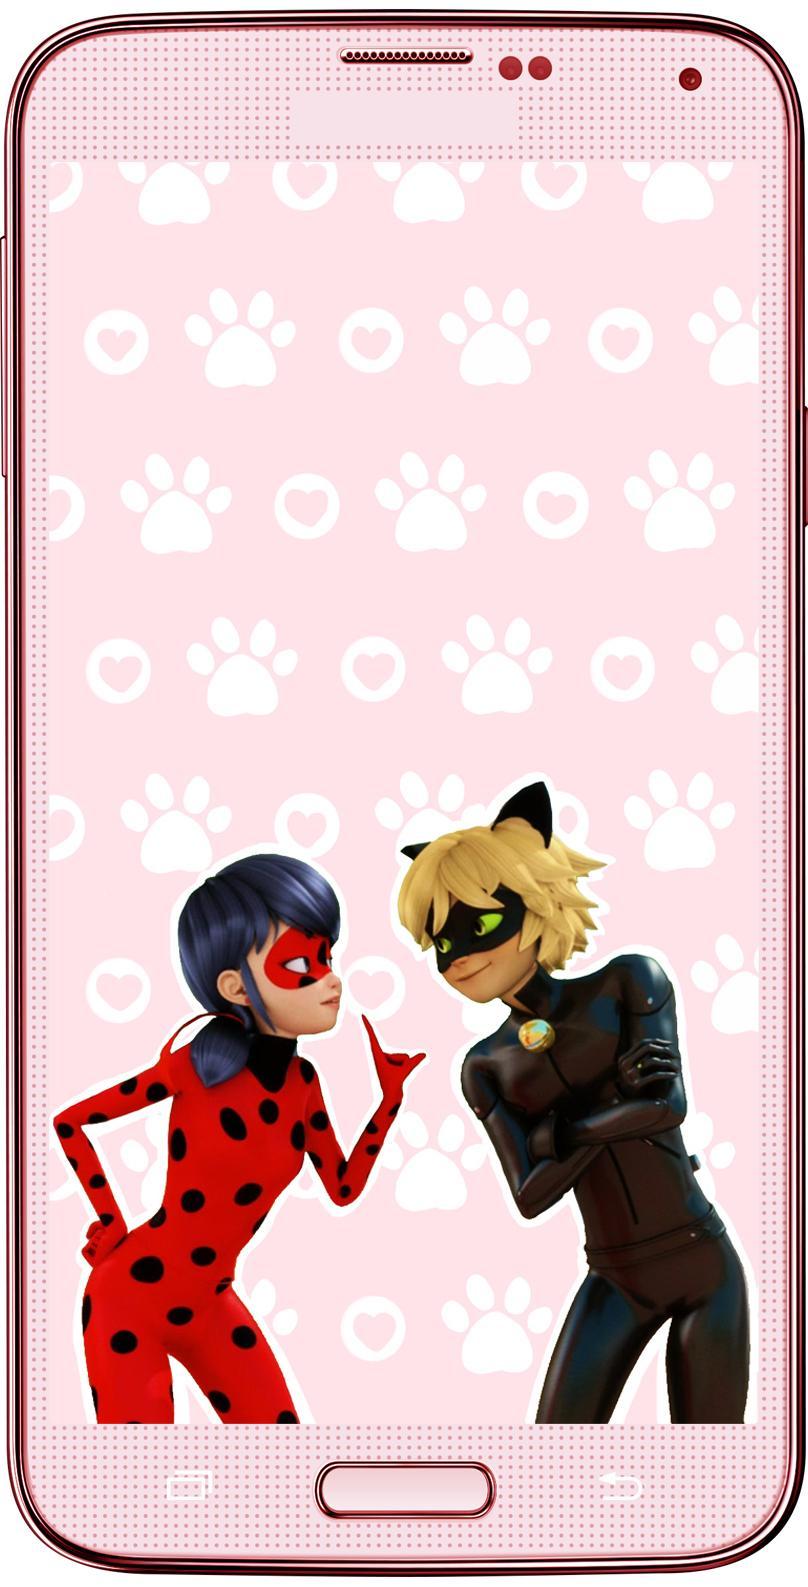 Download do APK de Papéis de parede Ladybug & Cat Noir para Android